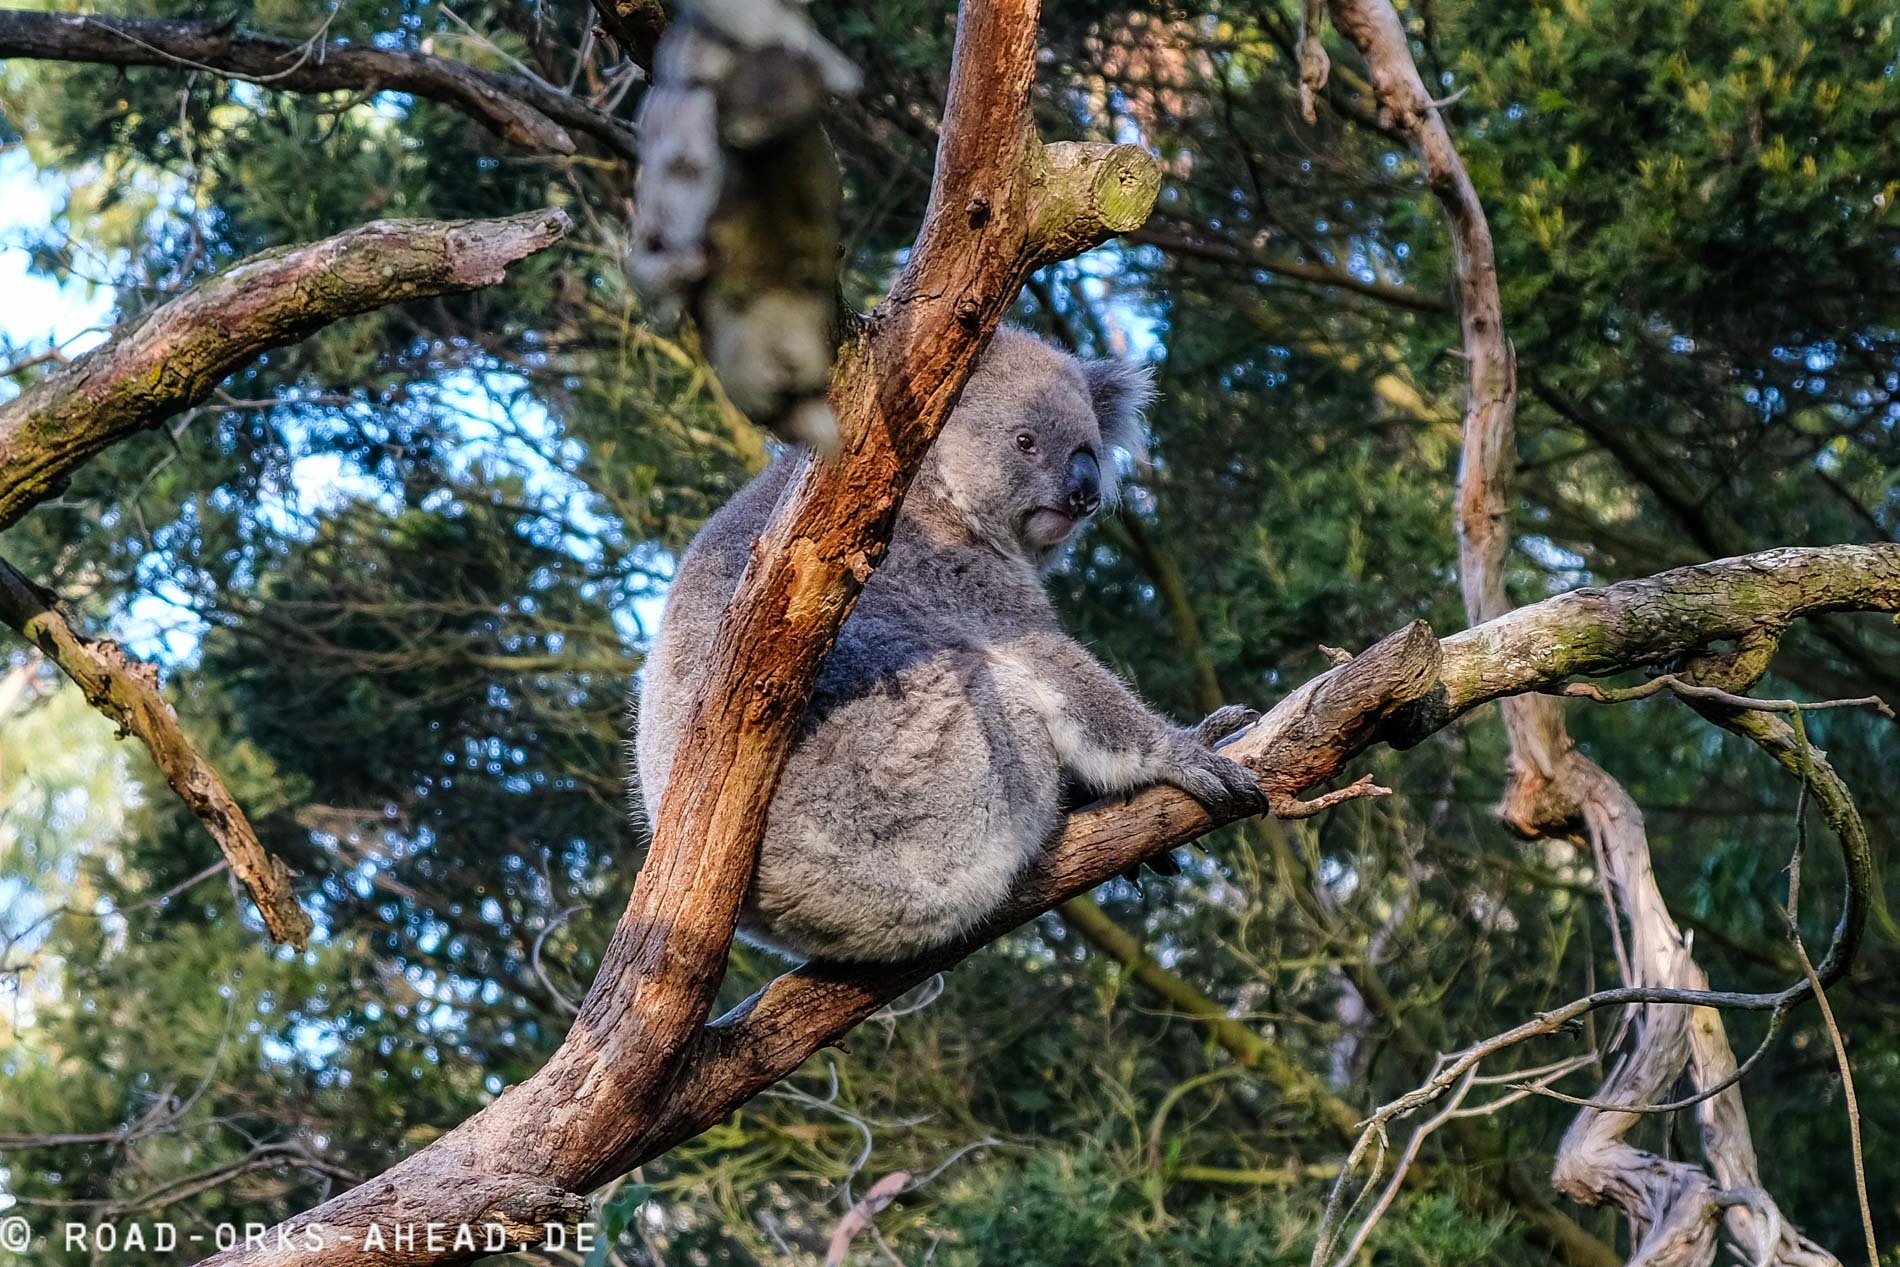 Phillip Island - Koala Conservation Center